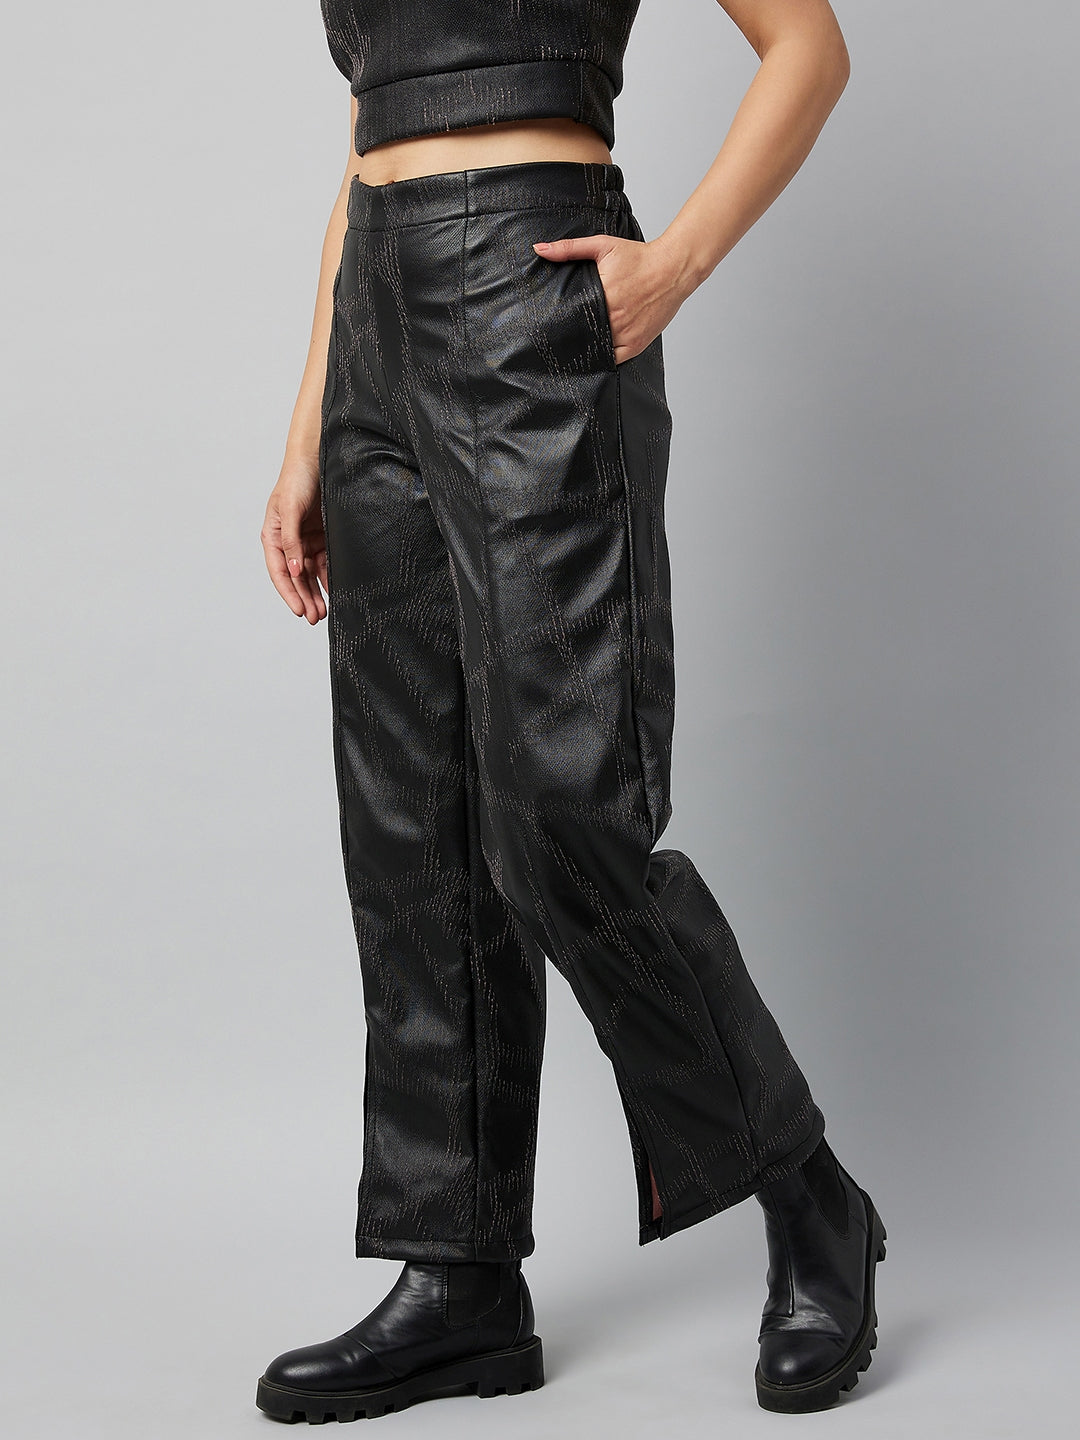 Athena Women Black Textured Smart Leather Non Iron Trousers - Athena Lifestyle